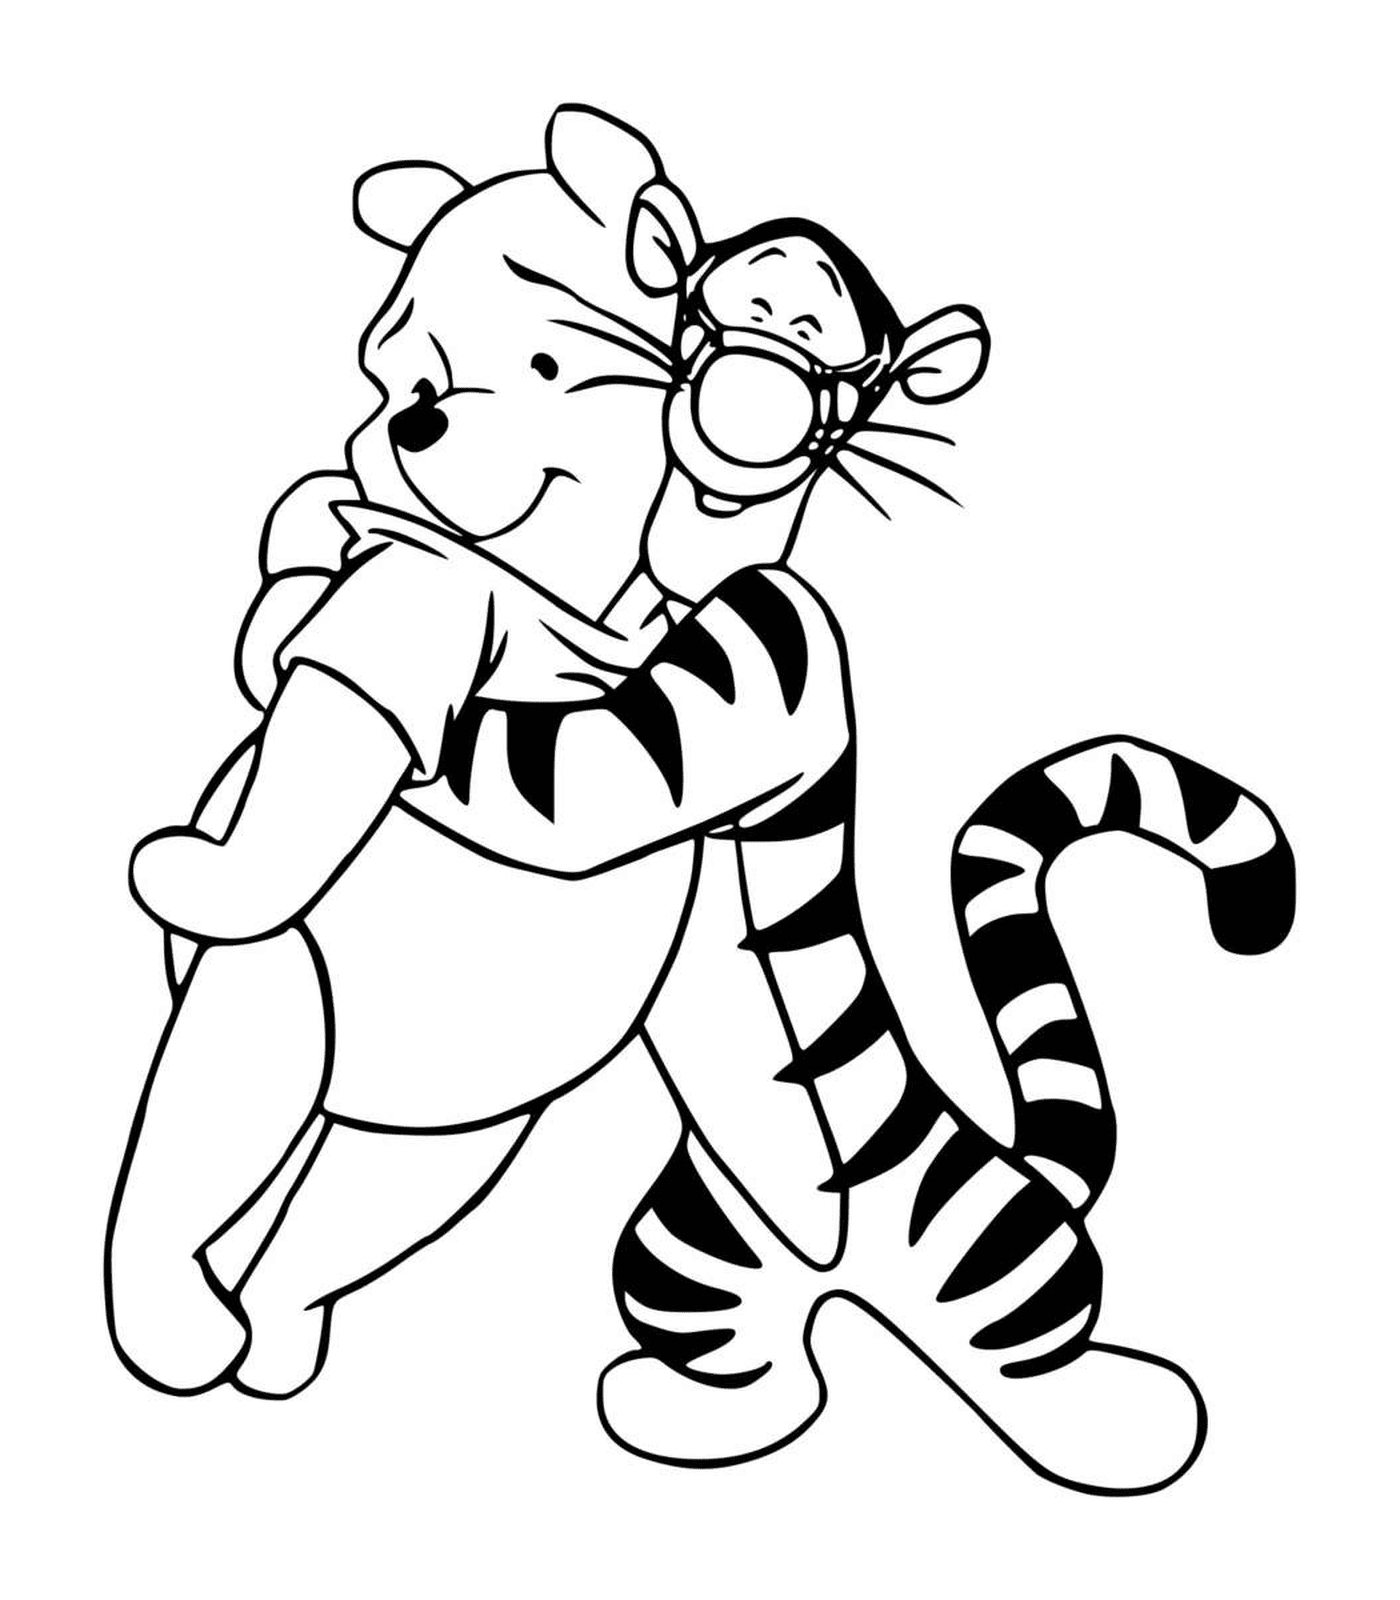  Tigreu abraza a Winnie 